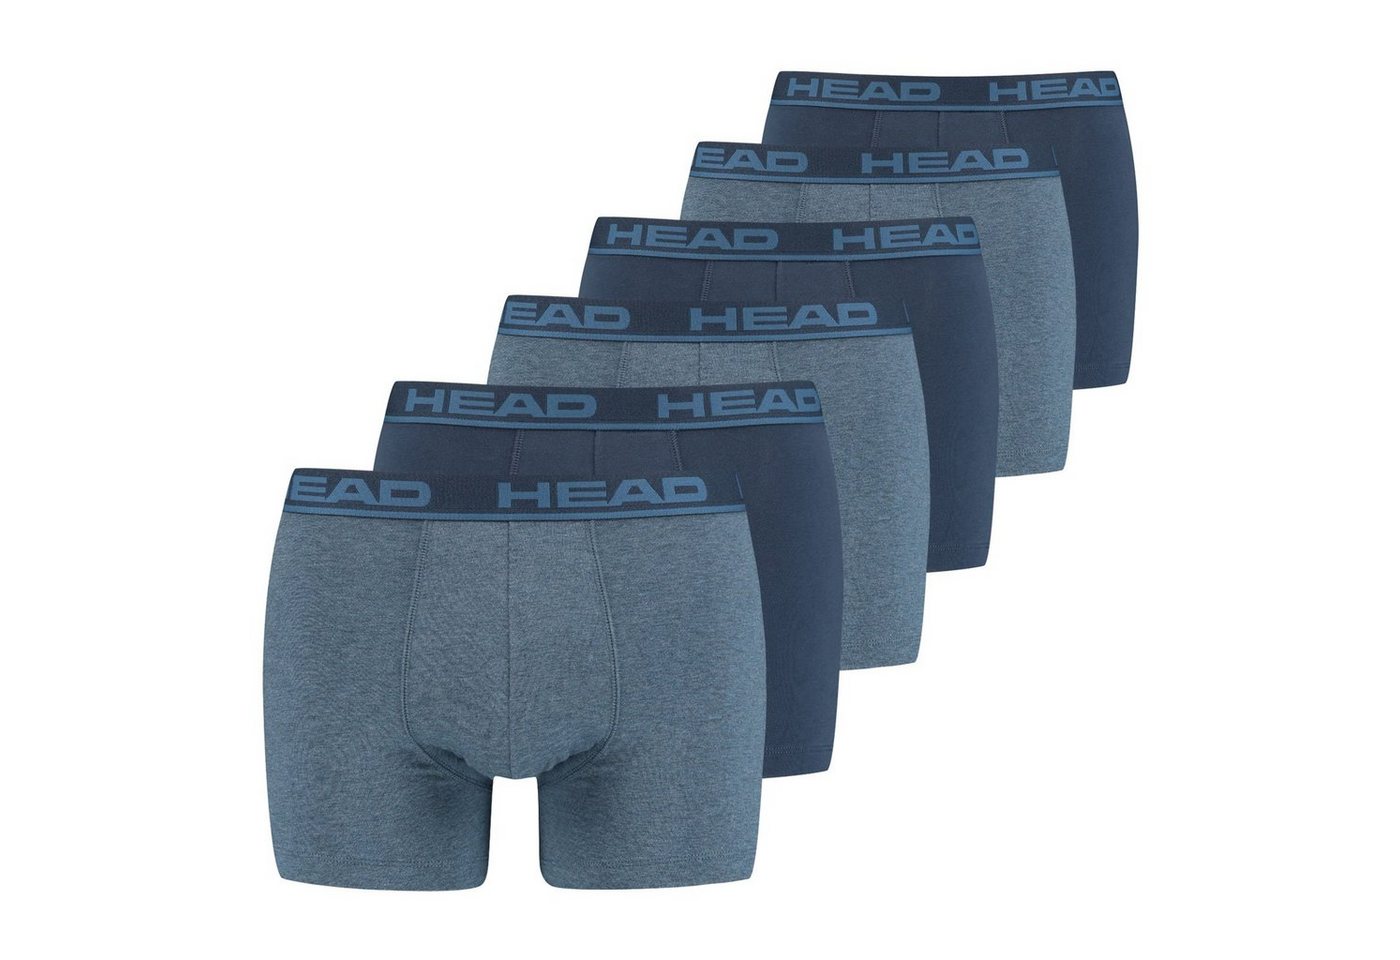 Head Boxer Basic (6-St) mit umlaufendem Markenschriftzug am Bund von Head